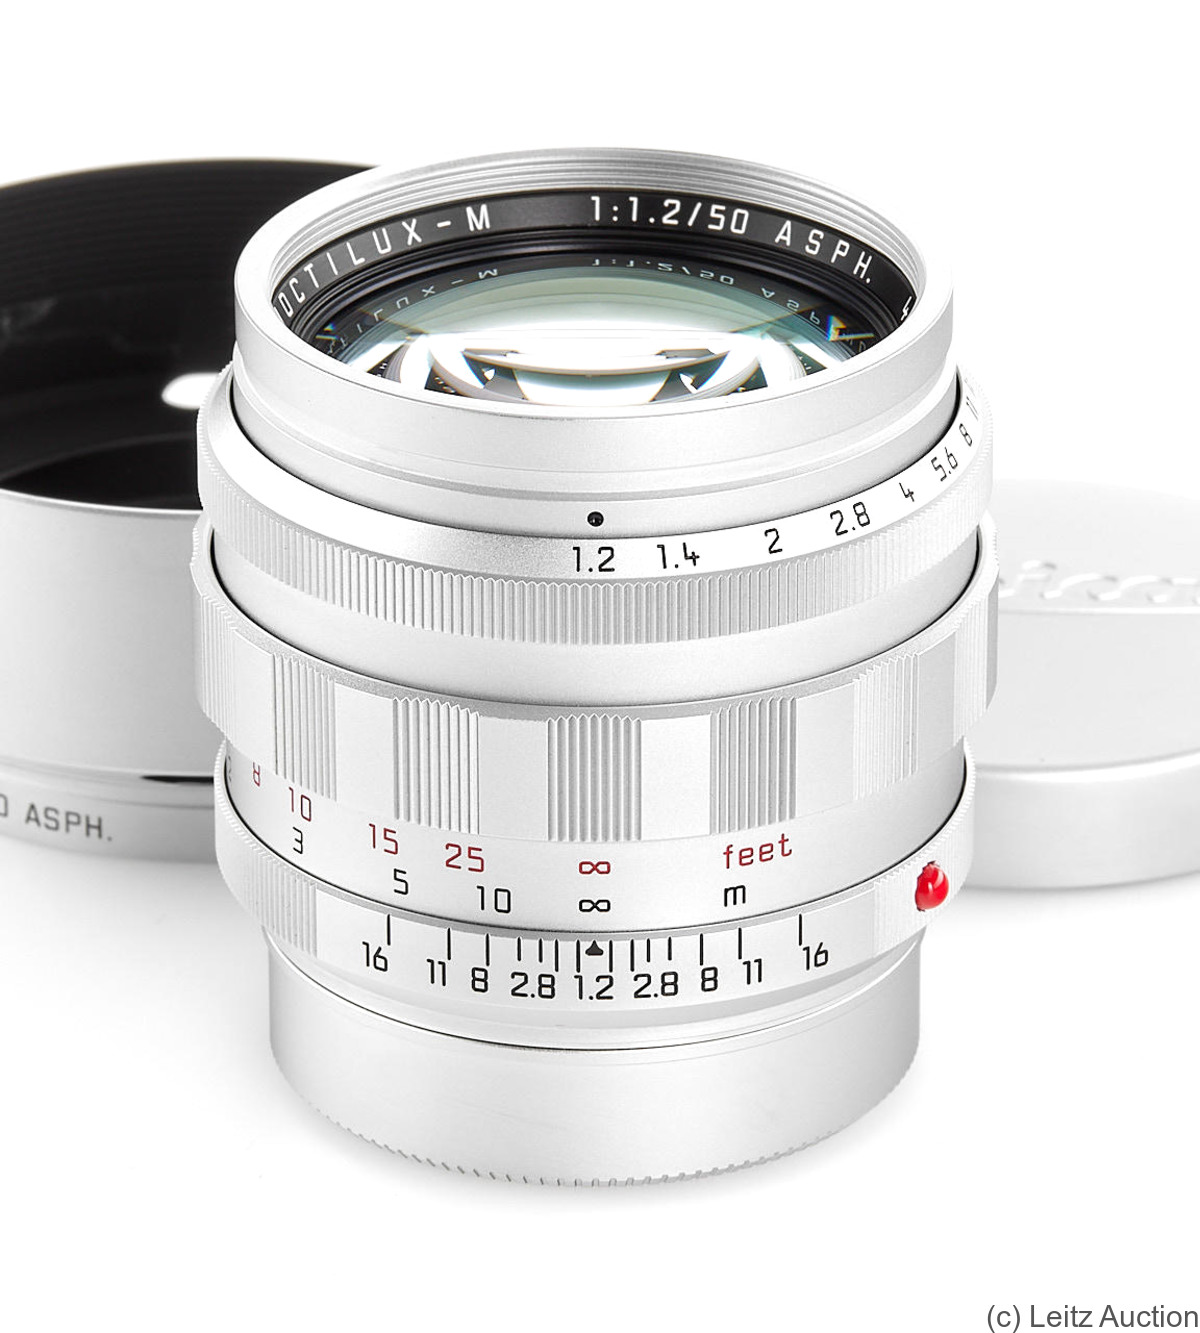 Leitz: 50mm (5cm) f1.2 Noctilux-M ASPH (BM) camera